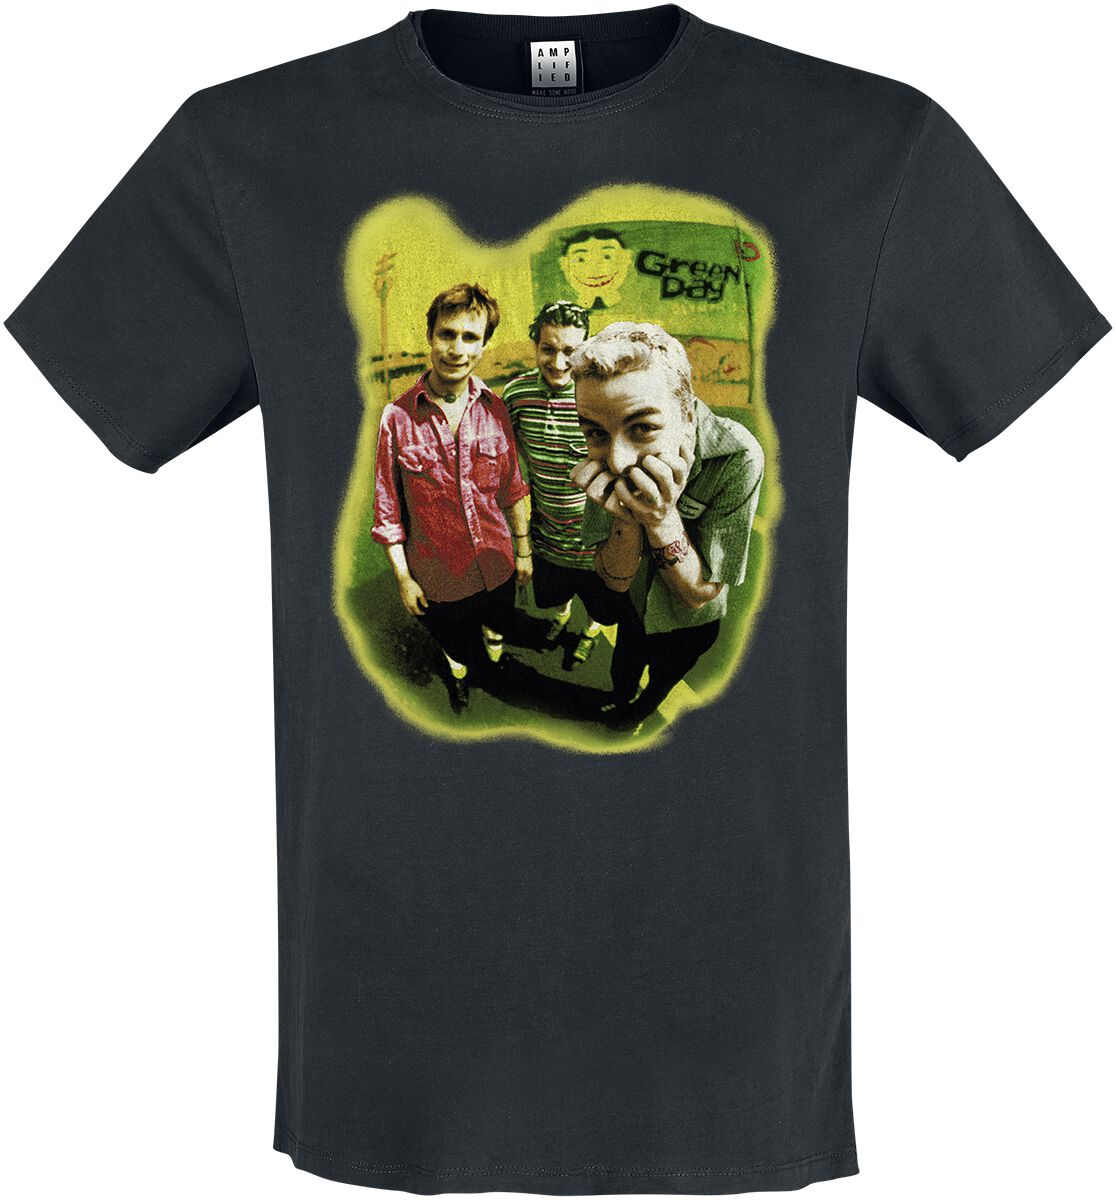 Green Day T-Shirt - Amplified Collection - Mugshot Rebels - M bis XL - für Männer - Größe XL - schwarz  - Lizenziertes Merchandise!